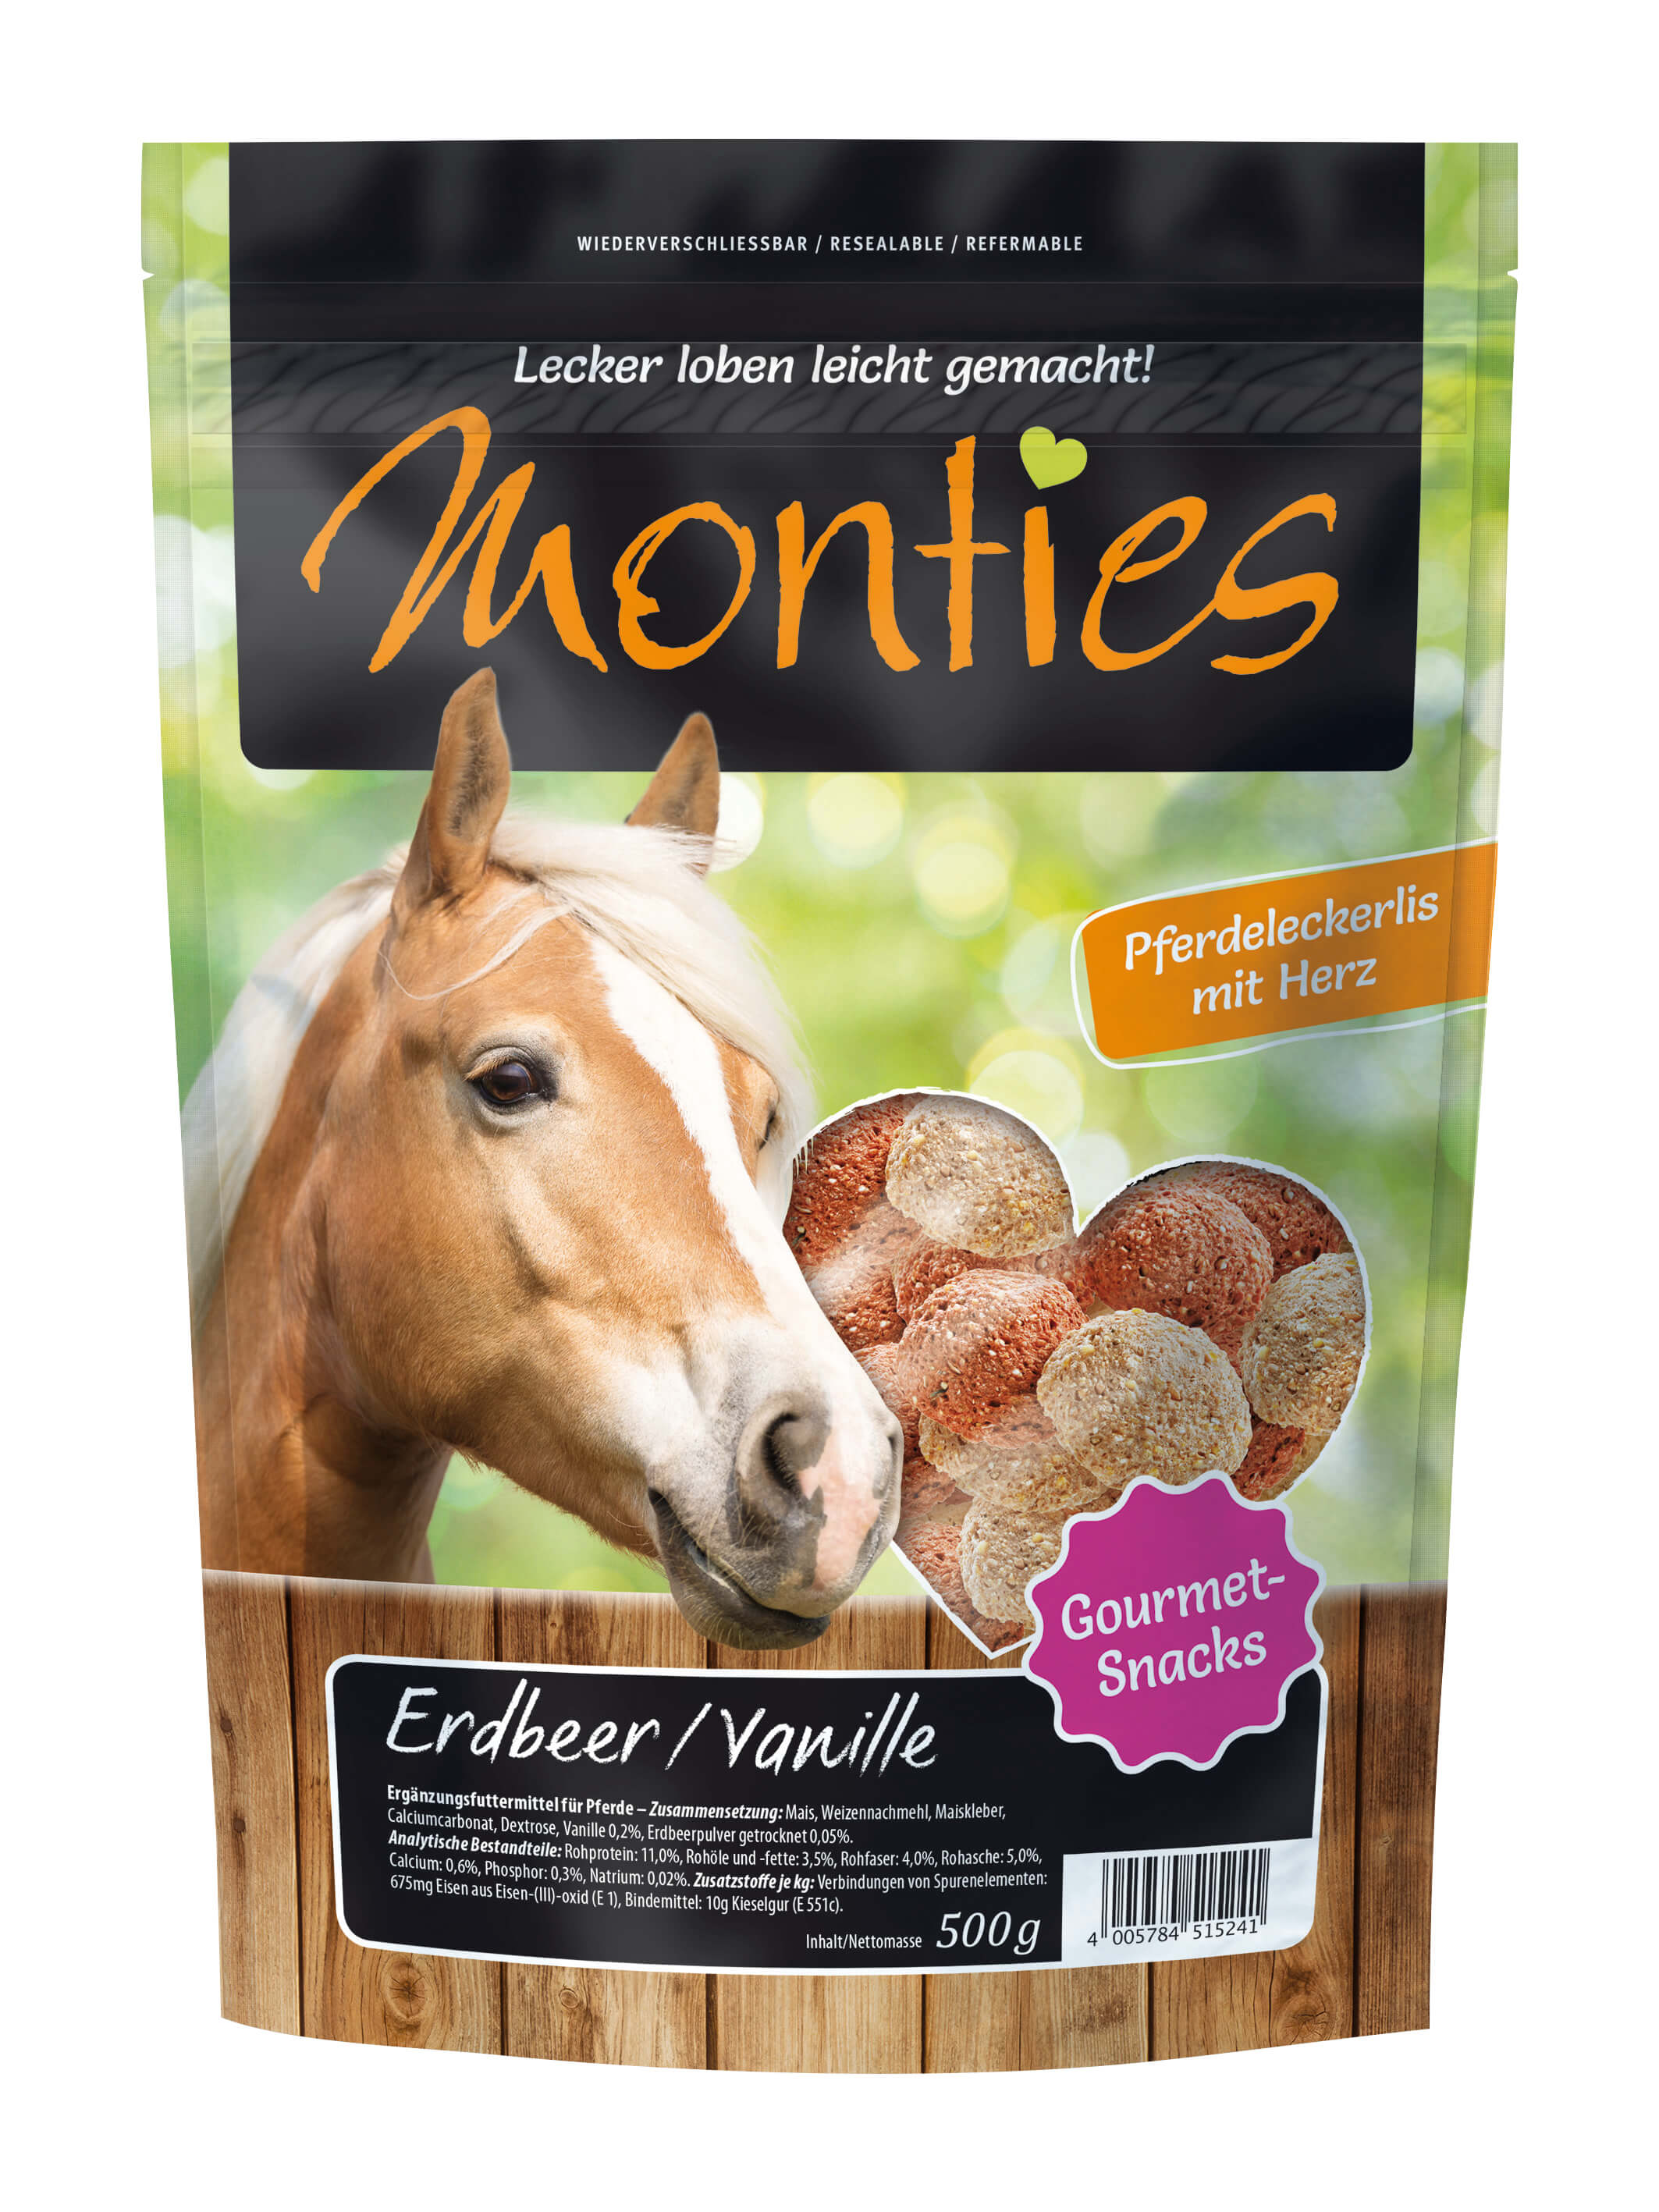 Monties - Erdbeer/Vanille-Snacks